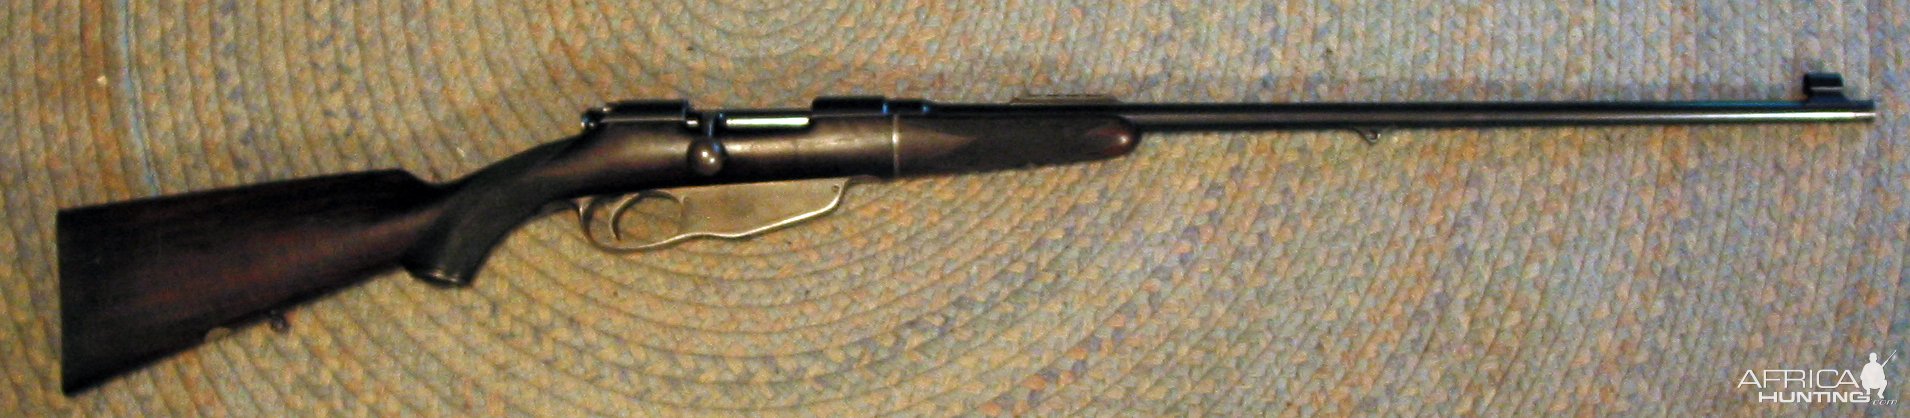 .256 Mannlicher Rifle By George Gibbs